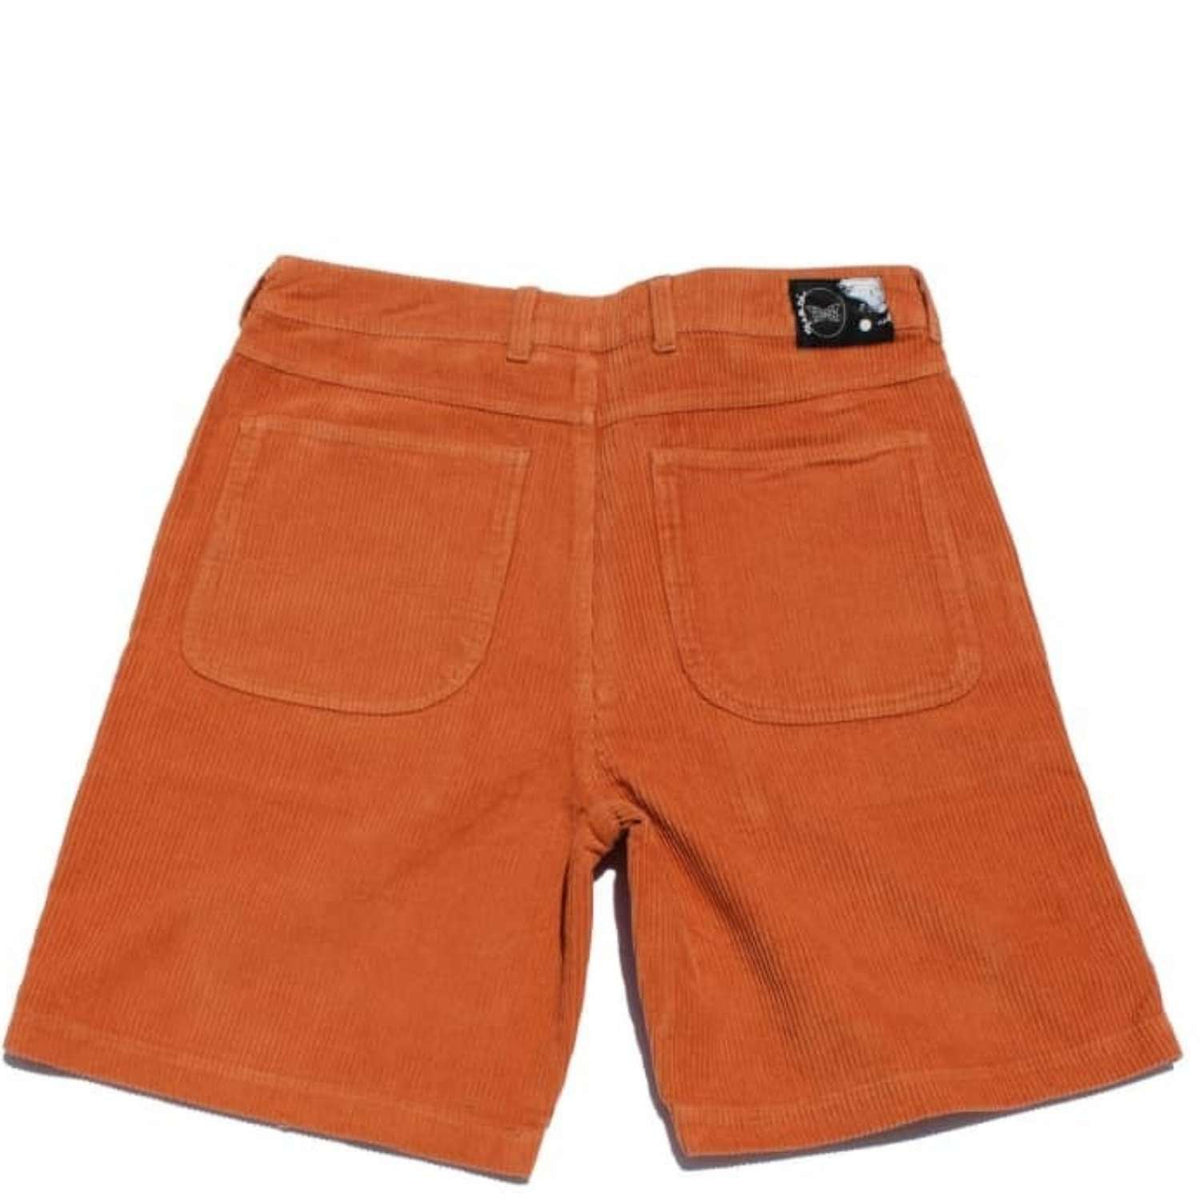 Quasi - Murmur Shorts - Peach